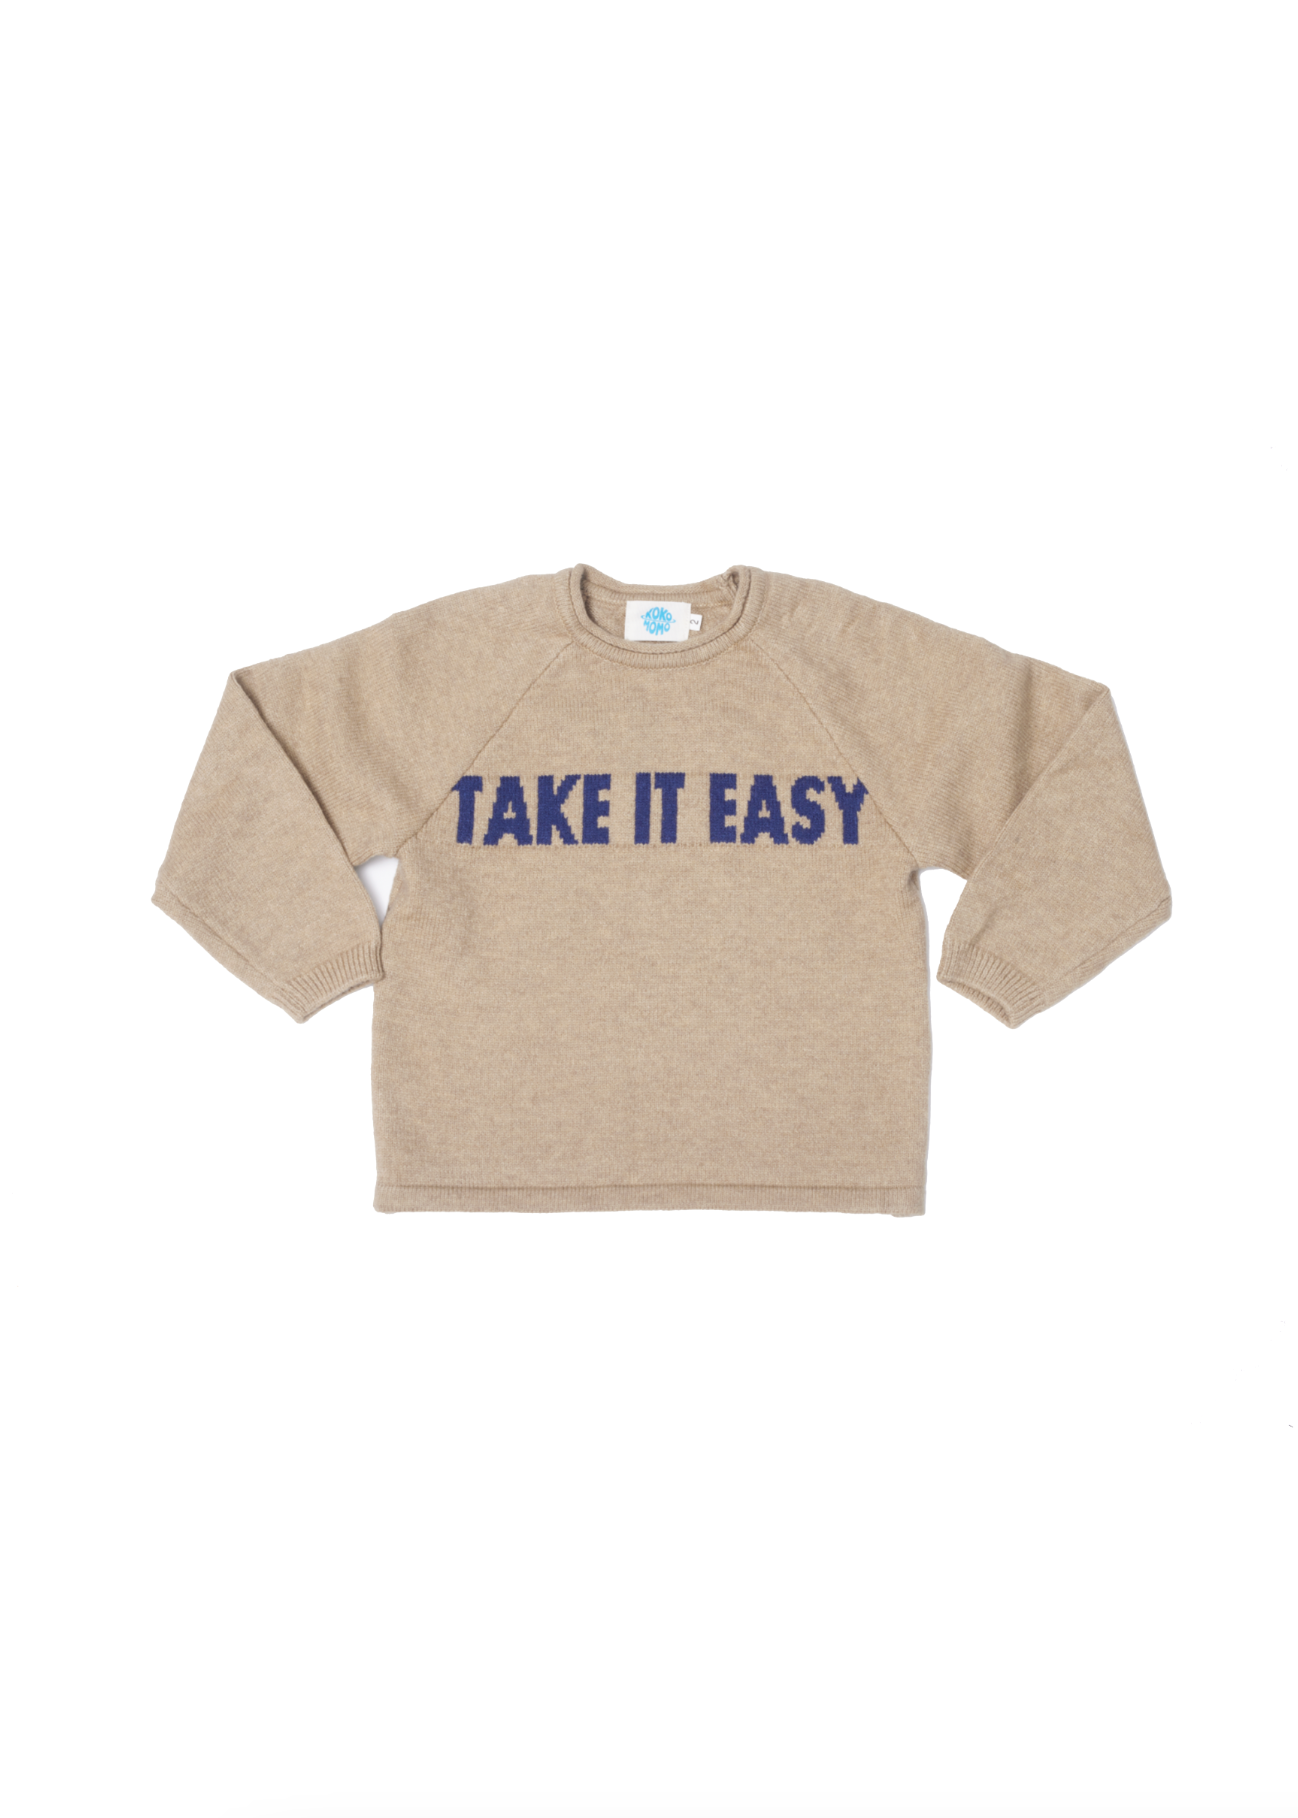 Take It Easy Sweater - Oatmeal